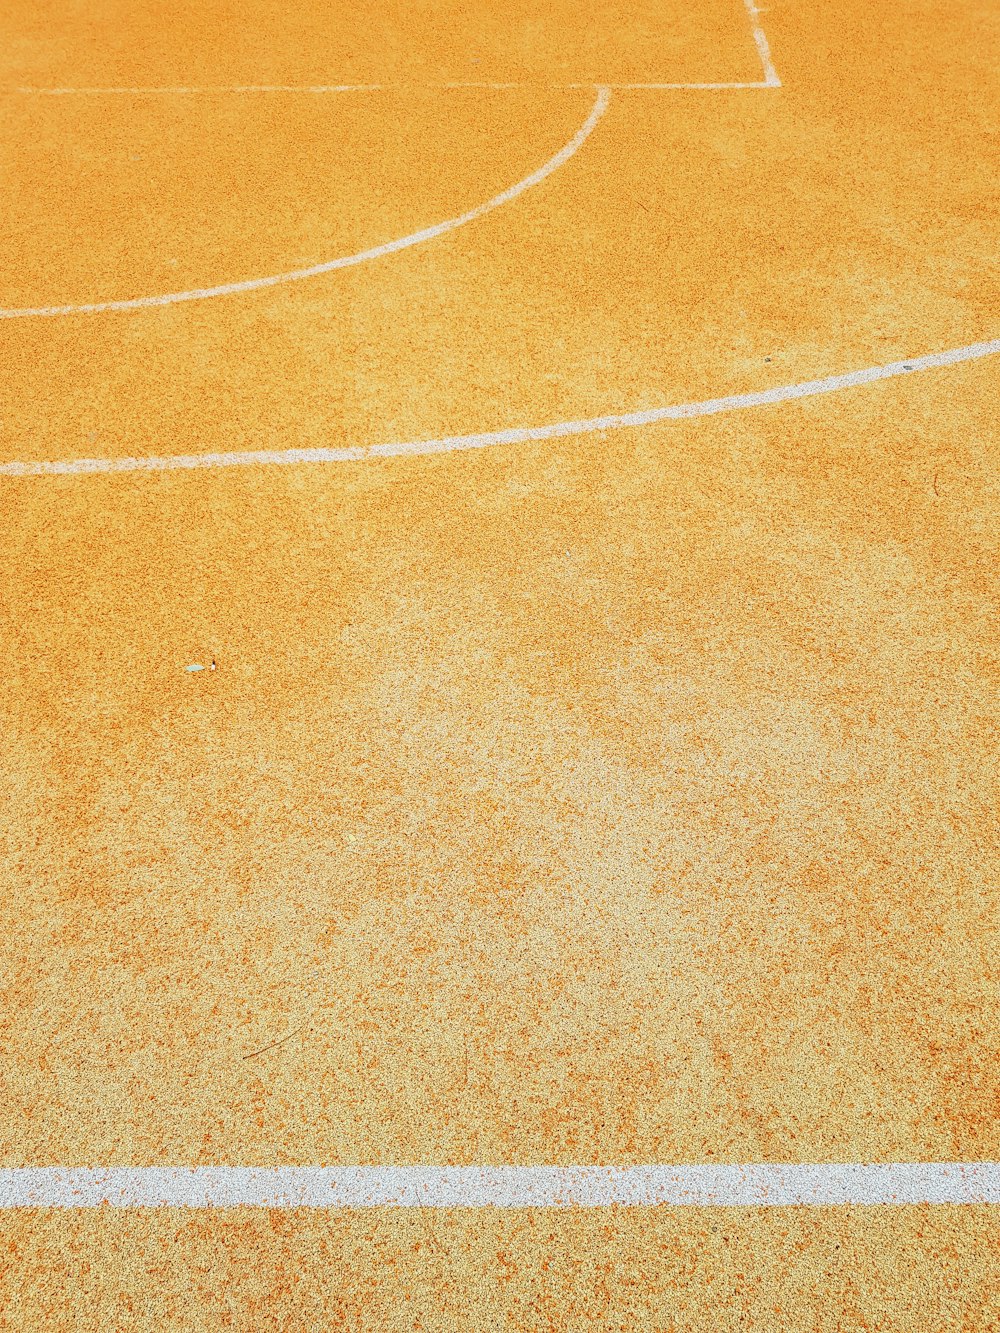 una cancha de baloncesto con una línea blanca